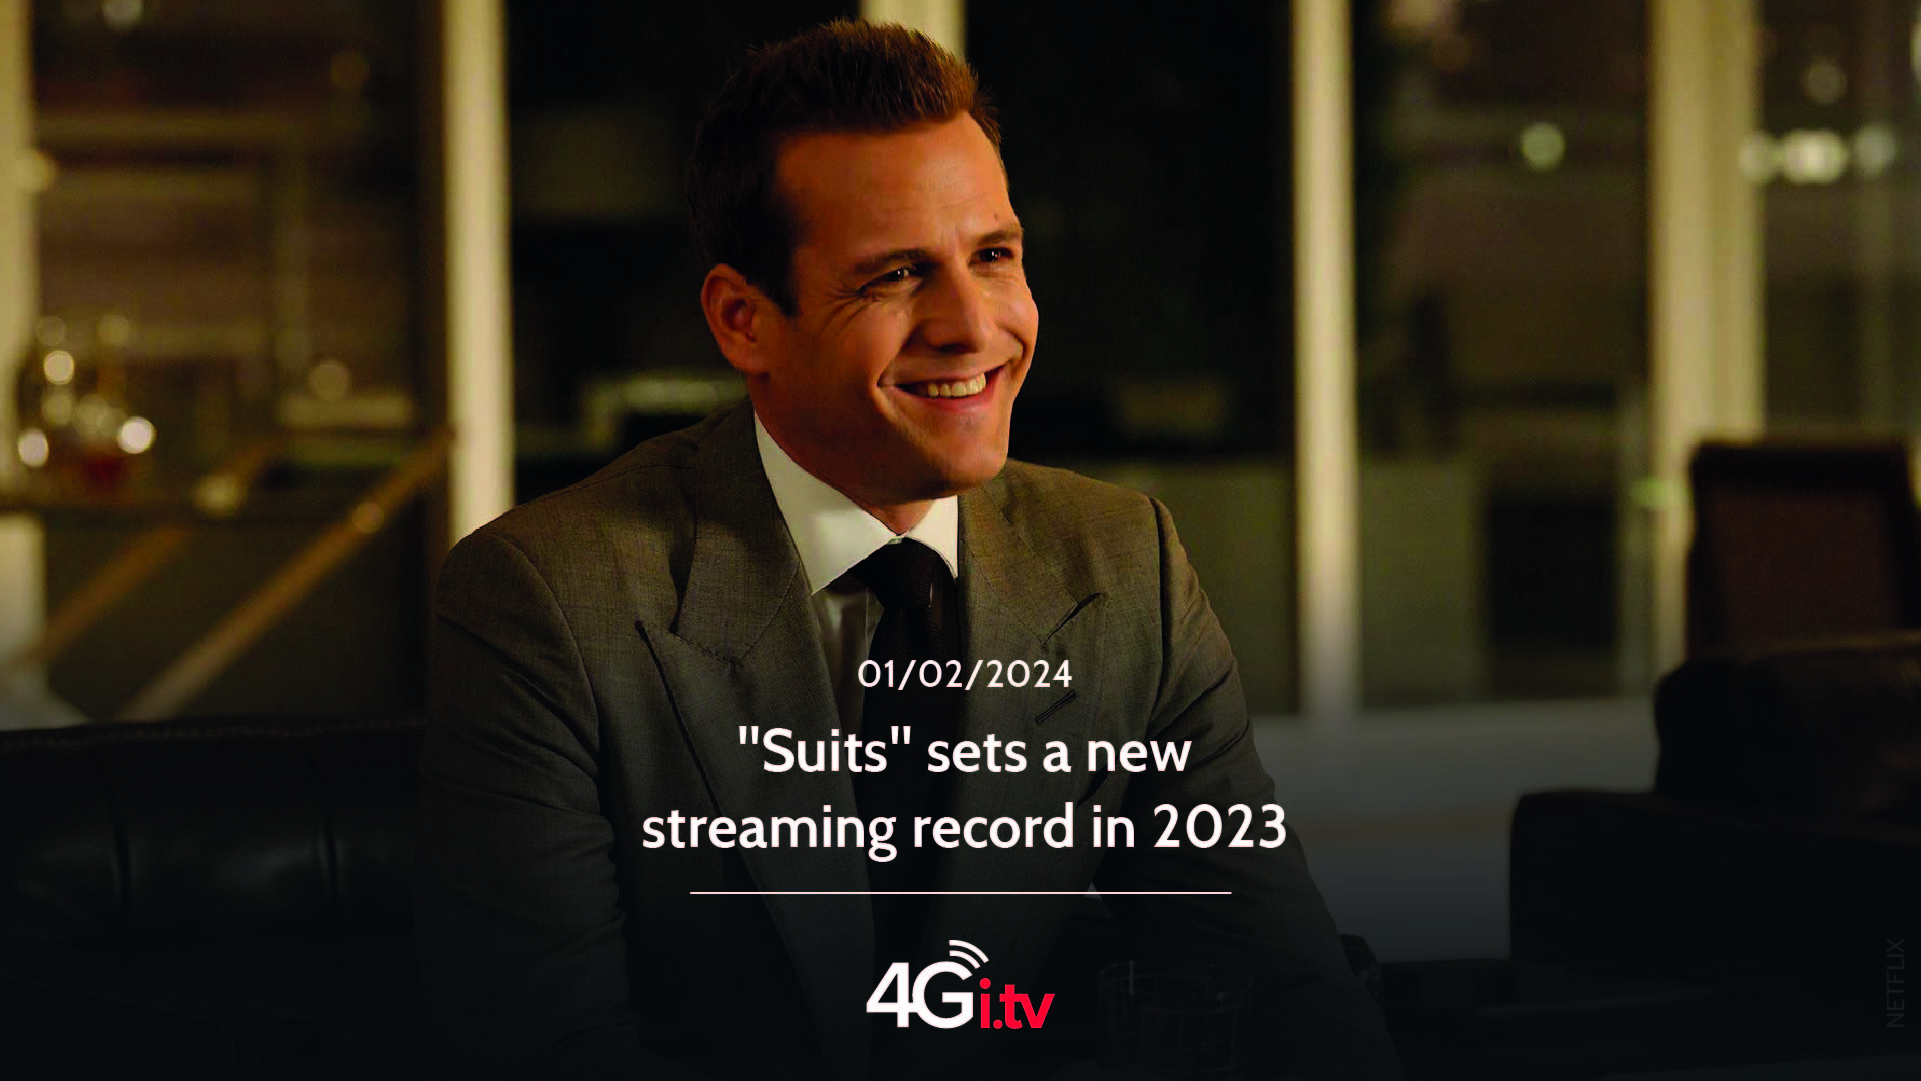 Lesen Sie mehr über den Artikel “Suits” sets a new streaming record in 2023